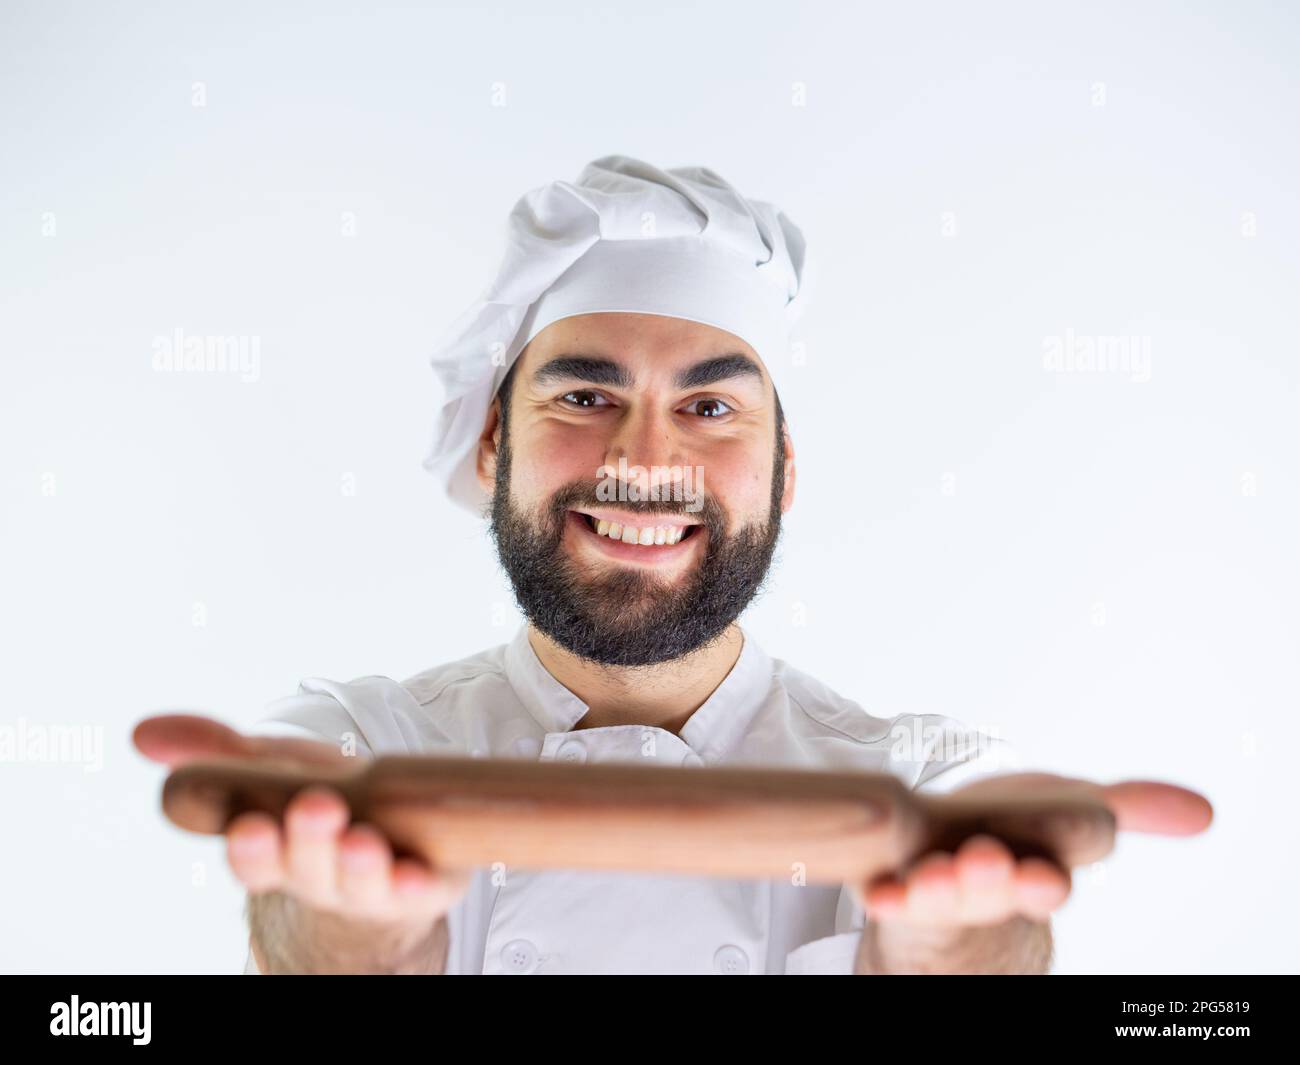 Giovane cuoco maschio che mostra un perno di legno mentre sorride e guarda la macchina fotografica. Isolato su sfondo bianco Foto Stock